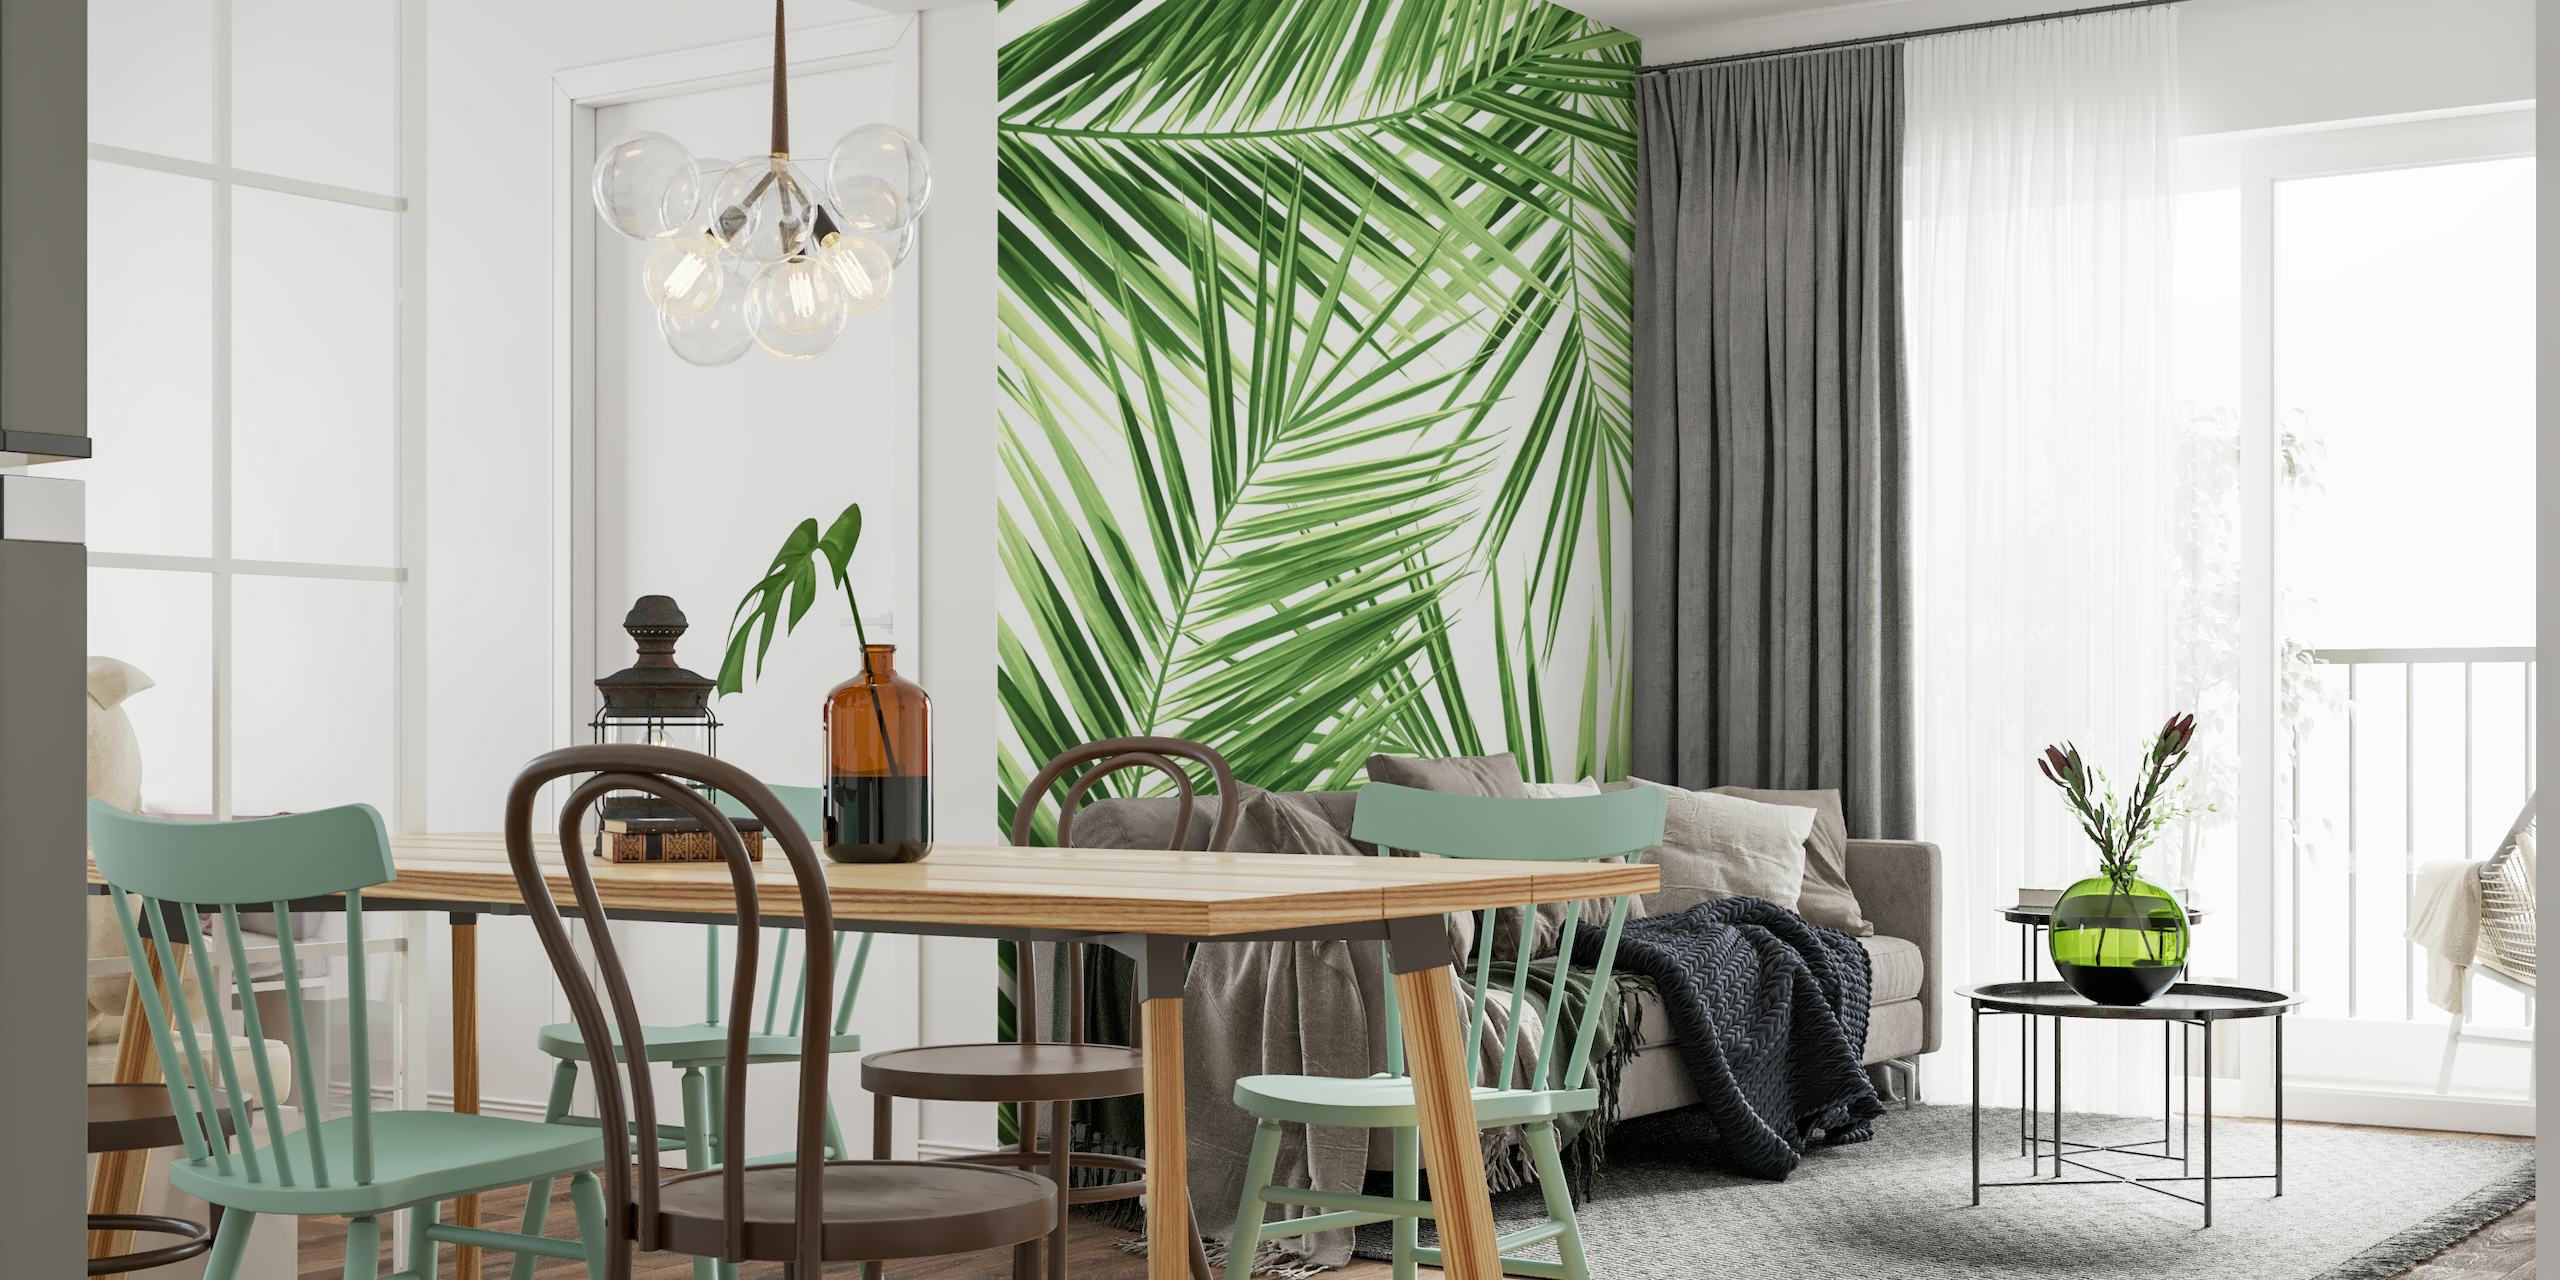 Fototapete mit grünem Palmblattmuster für eine tropische Dekoration